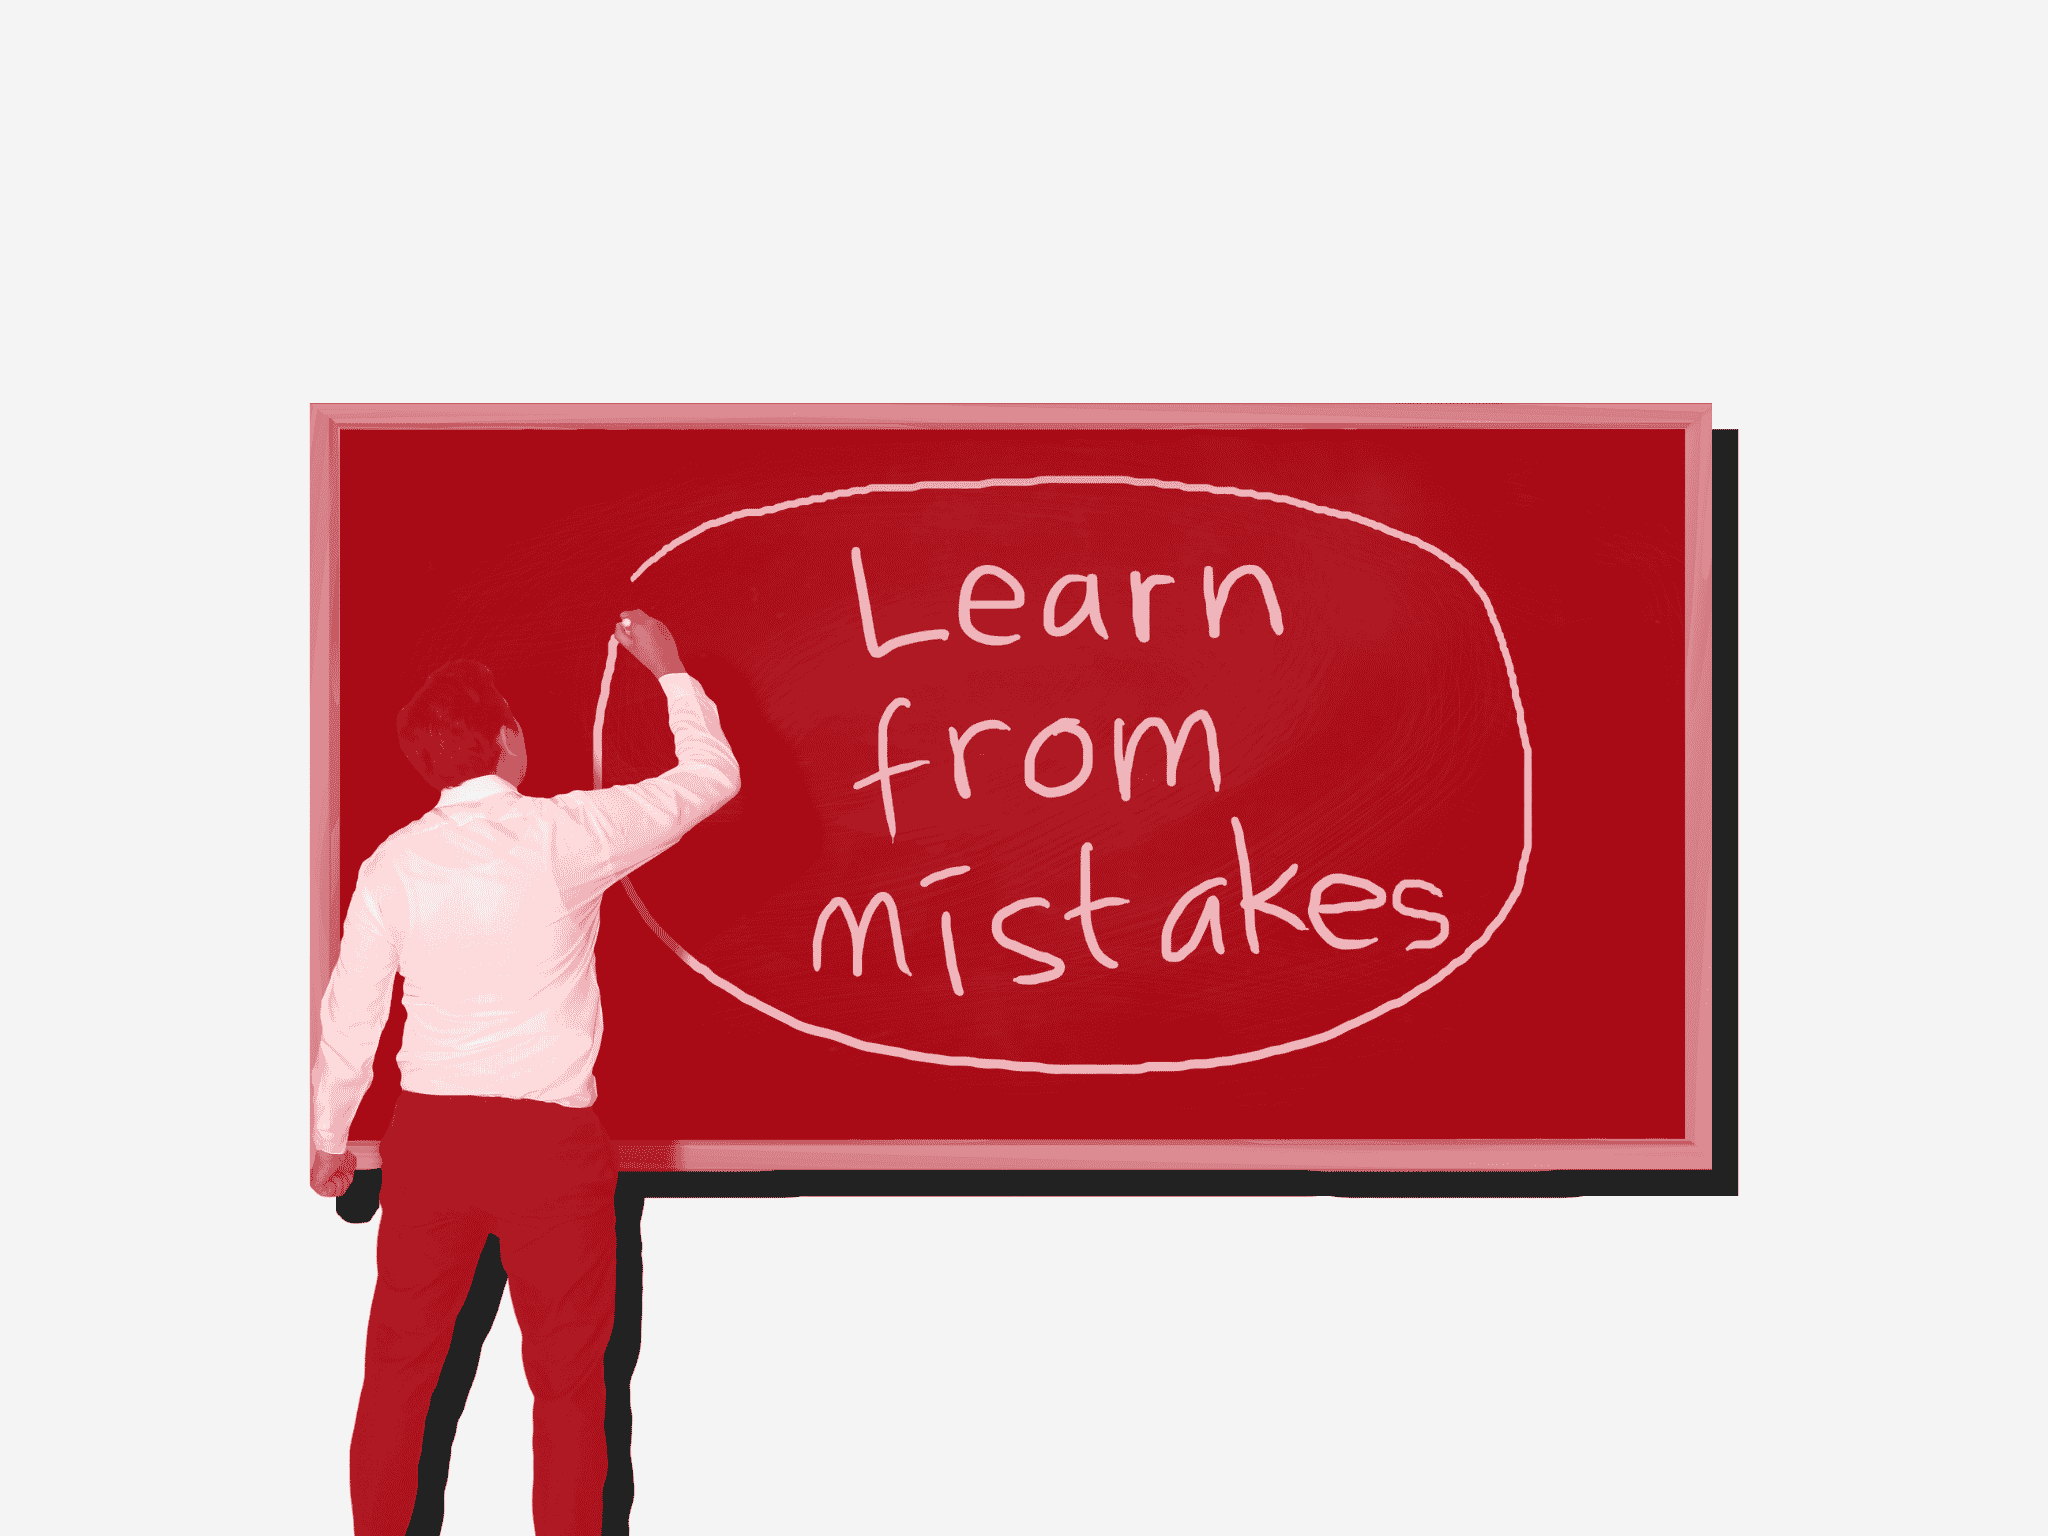 persona che scrive alla lavagna "learn from mistakes"